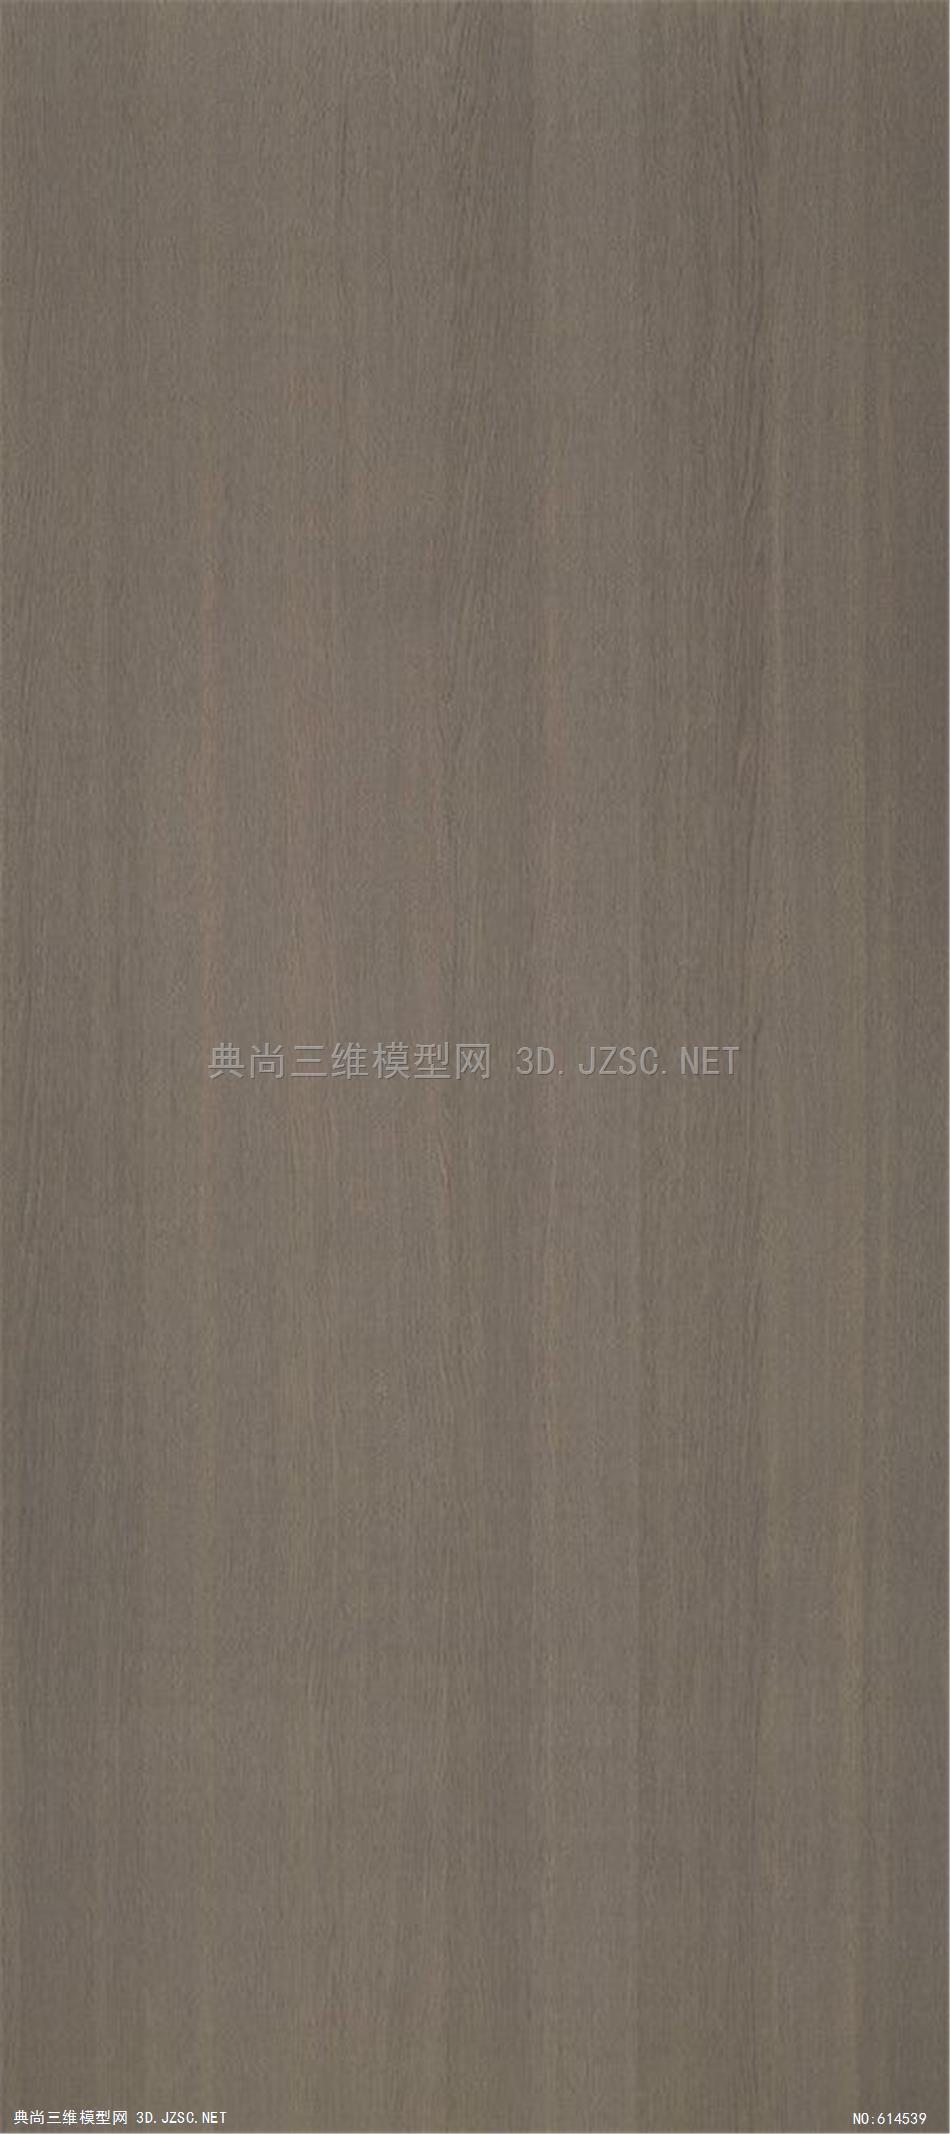 木饰面 木纹 木材  高清材质贴图 (335)